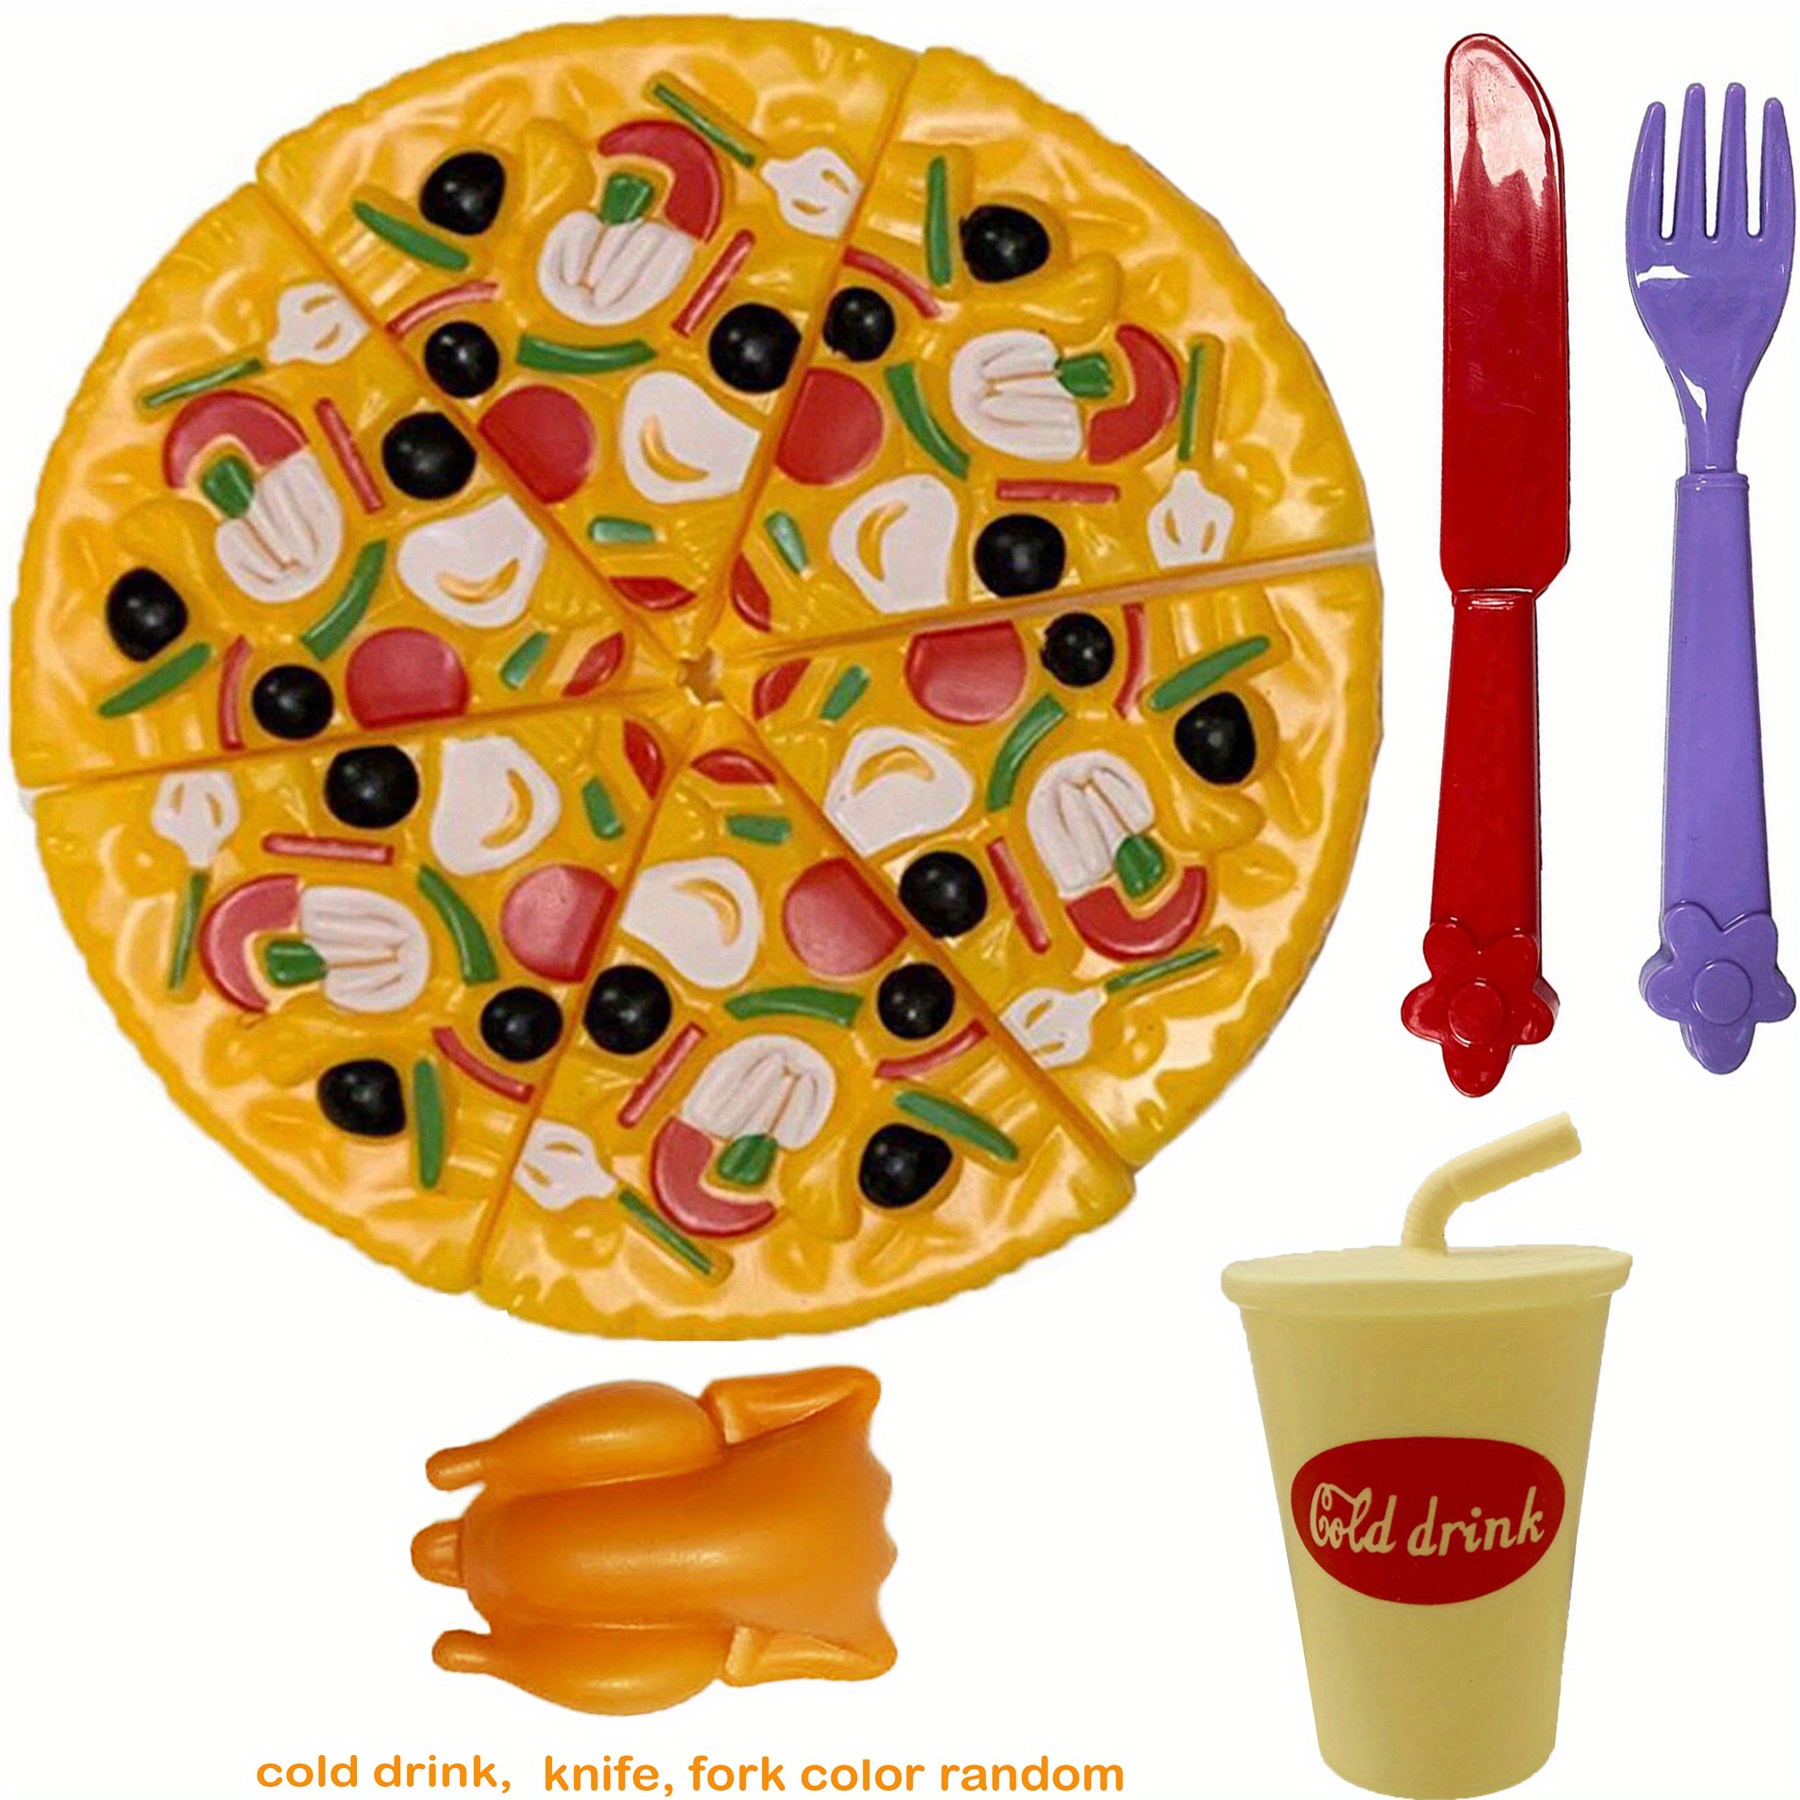 Brinquedos infantis de Simulação de Comida, Prato de Fast Food, Hambúrguer,  Bife, Pizza, Jogo de Cozinha Infantil